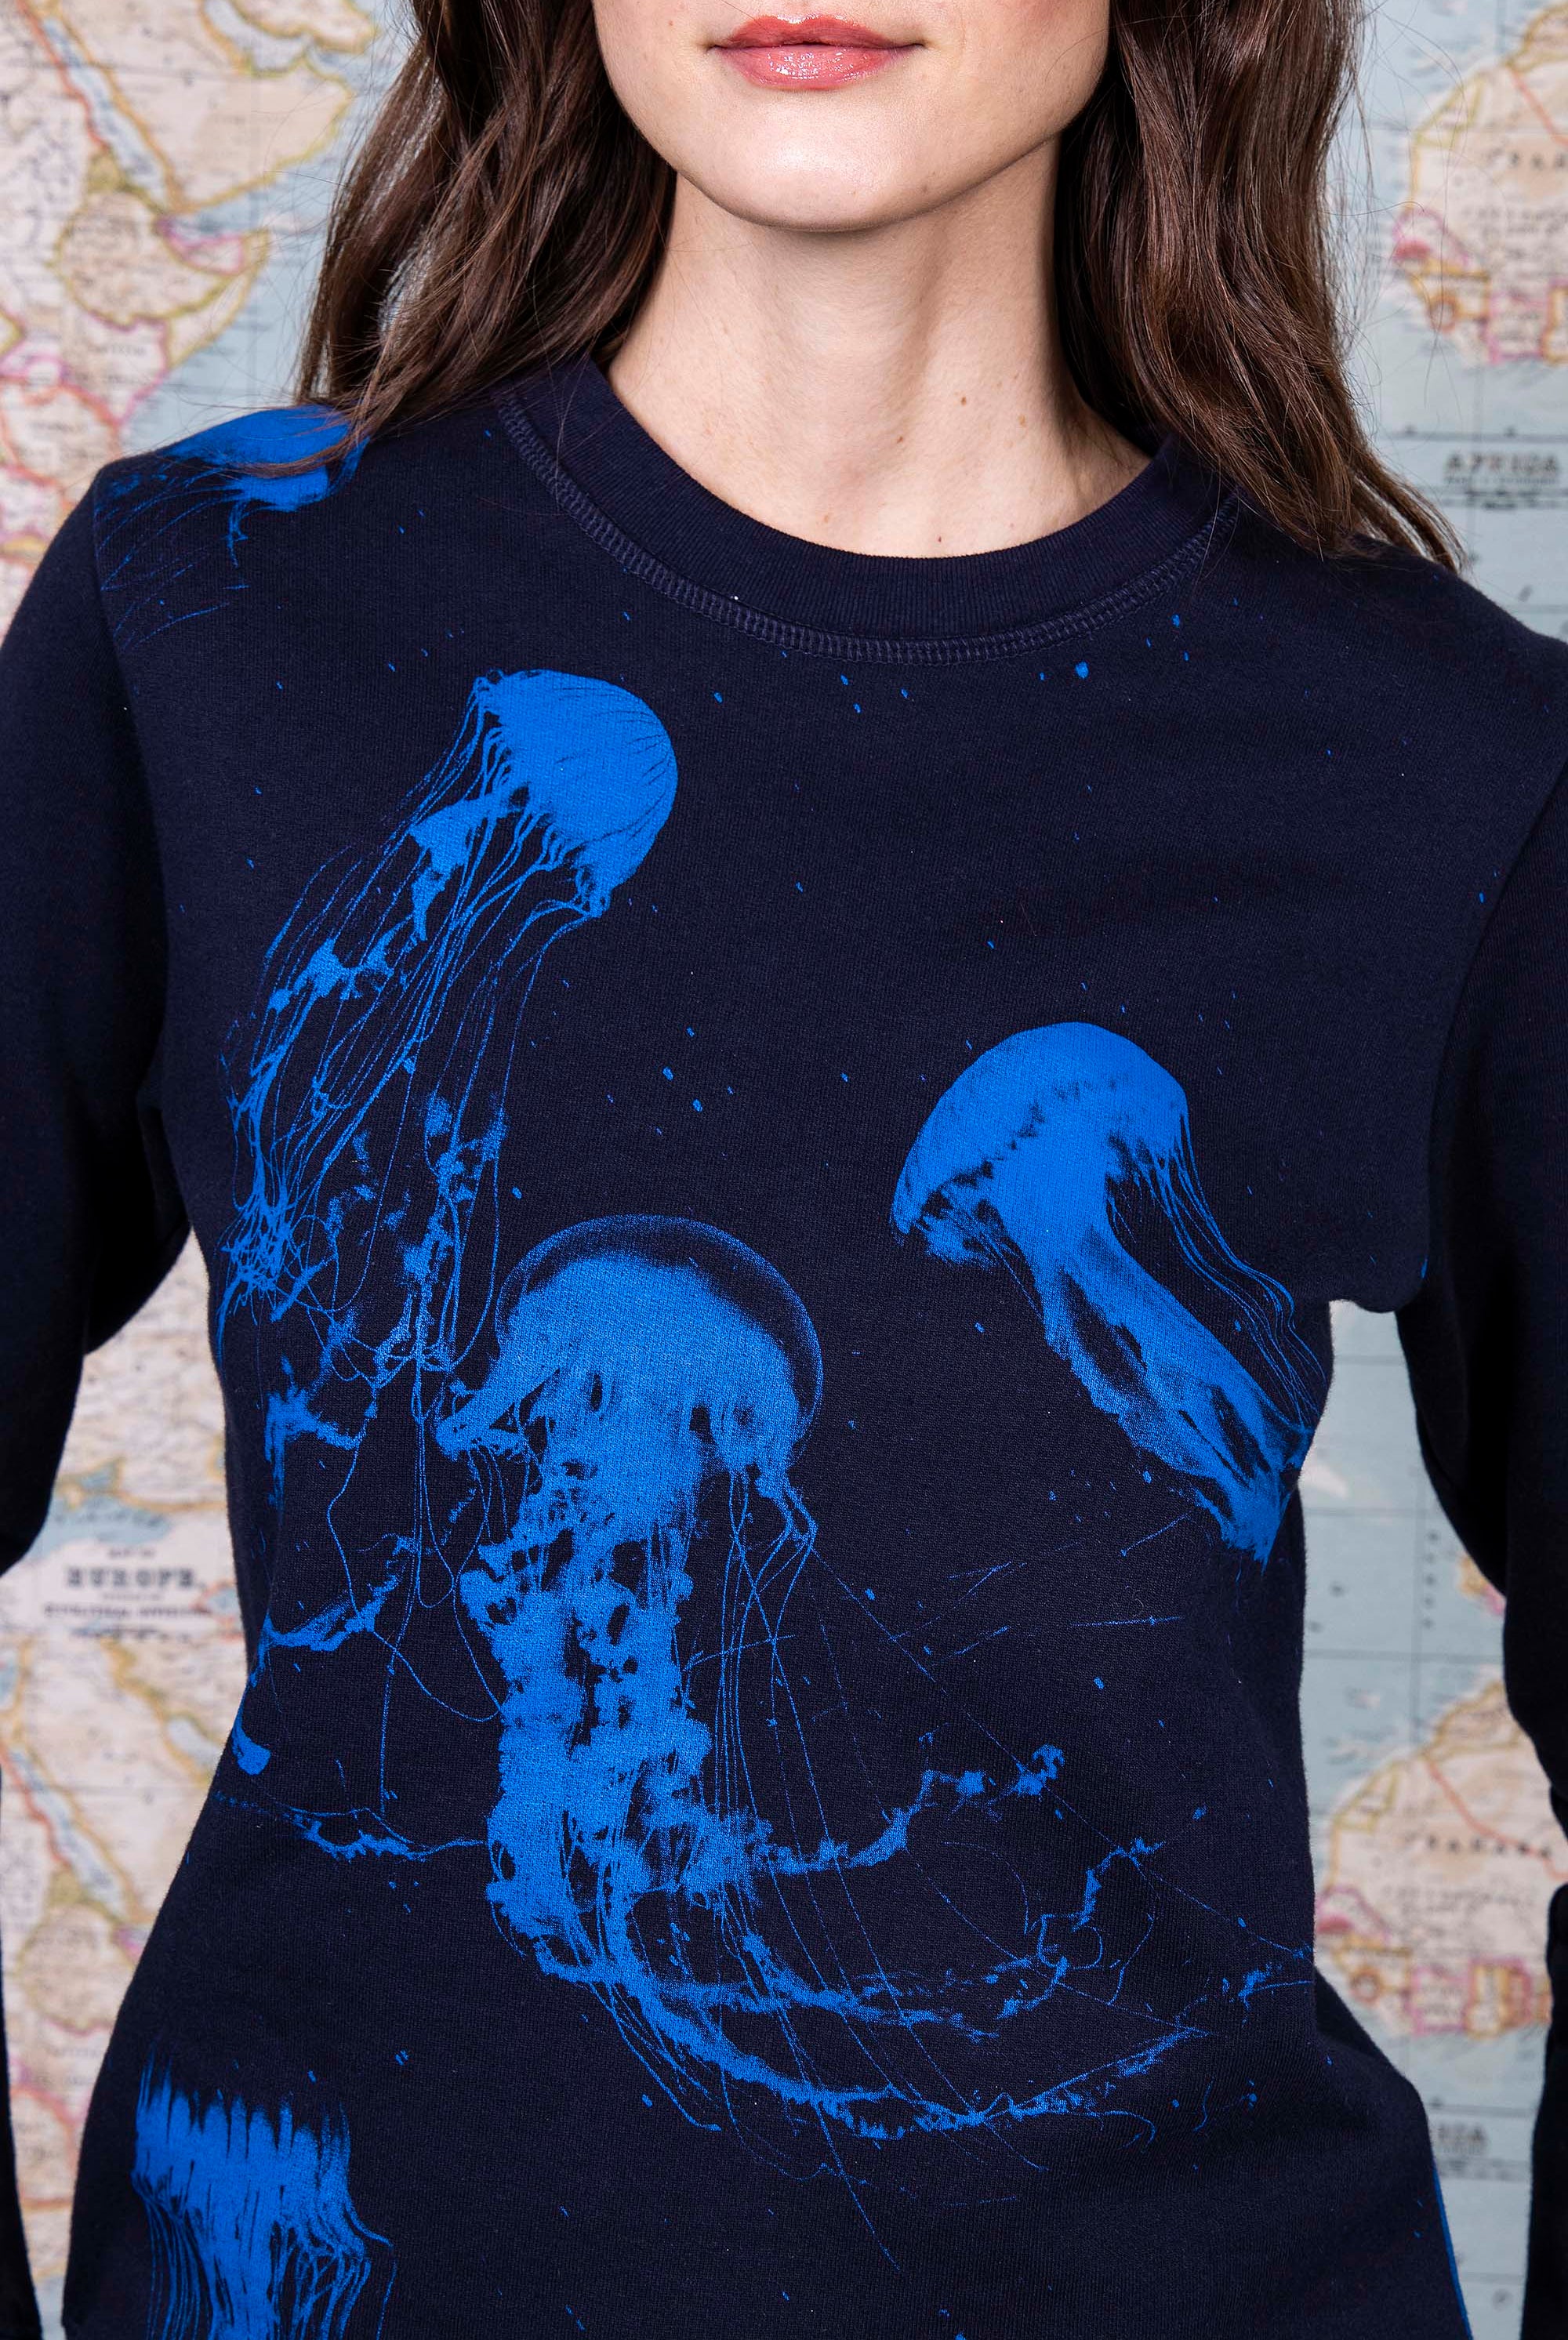 Sweatshirt Macarron Medusas Bleu Marine sweatshirt femme, pièce basique et vêtement cocooning du quotidien